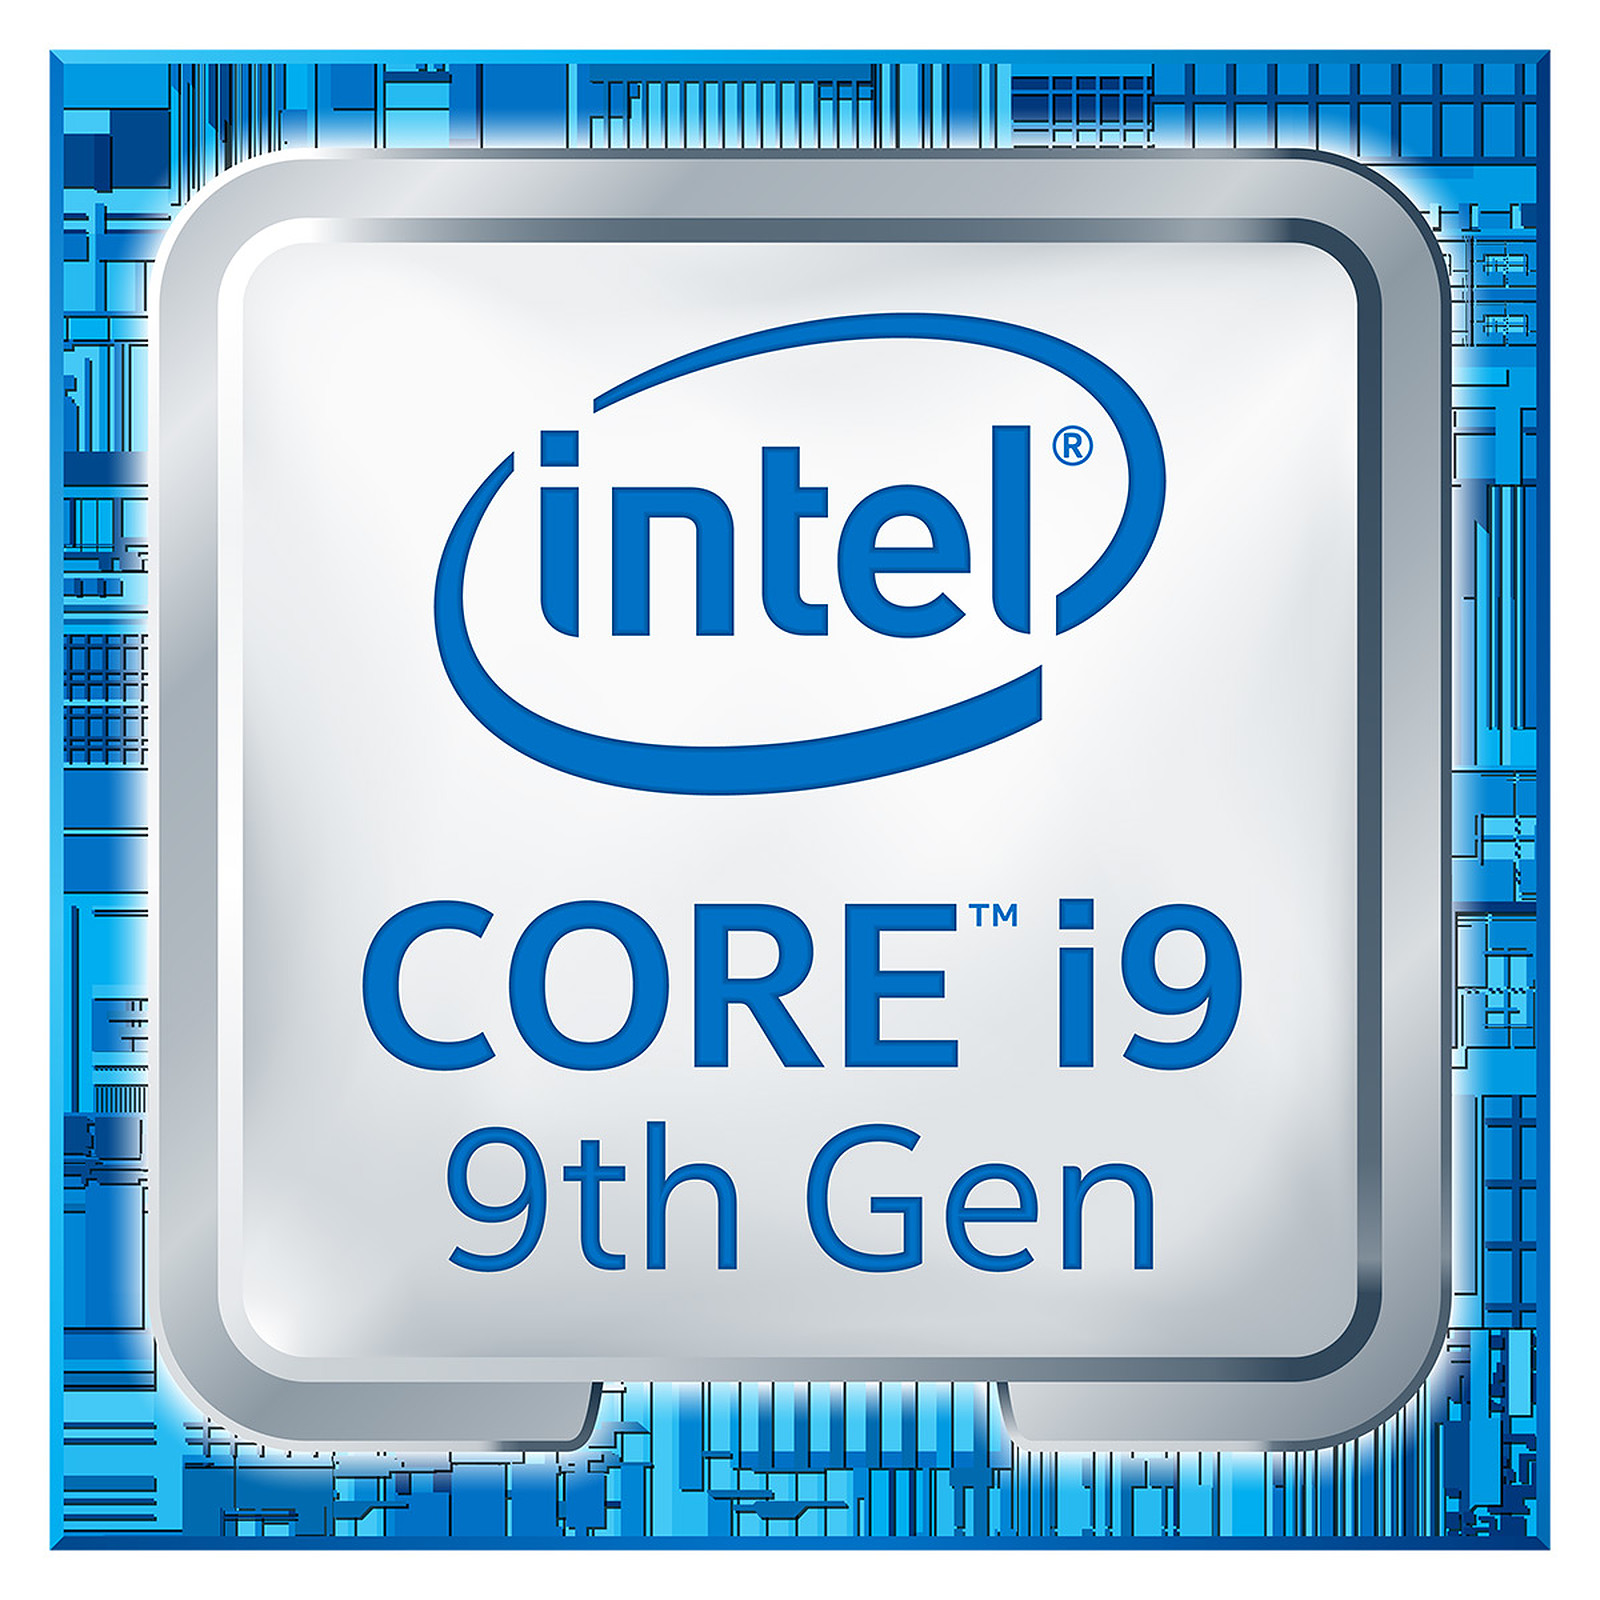 Intel trình làng Core i9-9980HK: Bộ vi xử lý mạnh nhất dành cho laptop, xung nhịp 5GHz, 8 lõi - 16 luồng